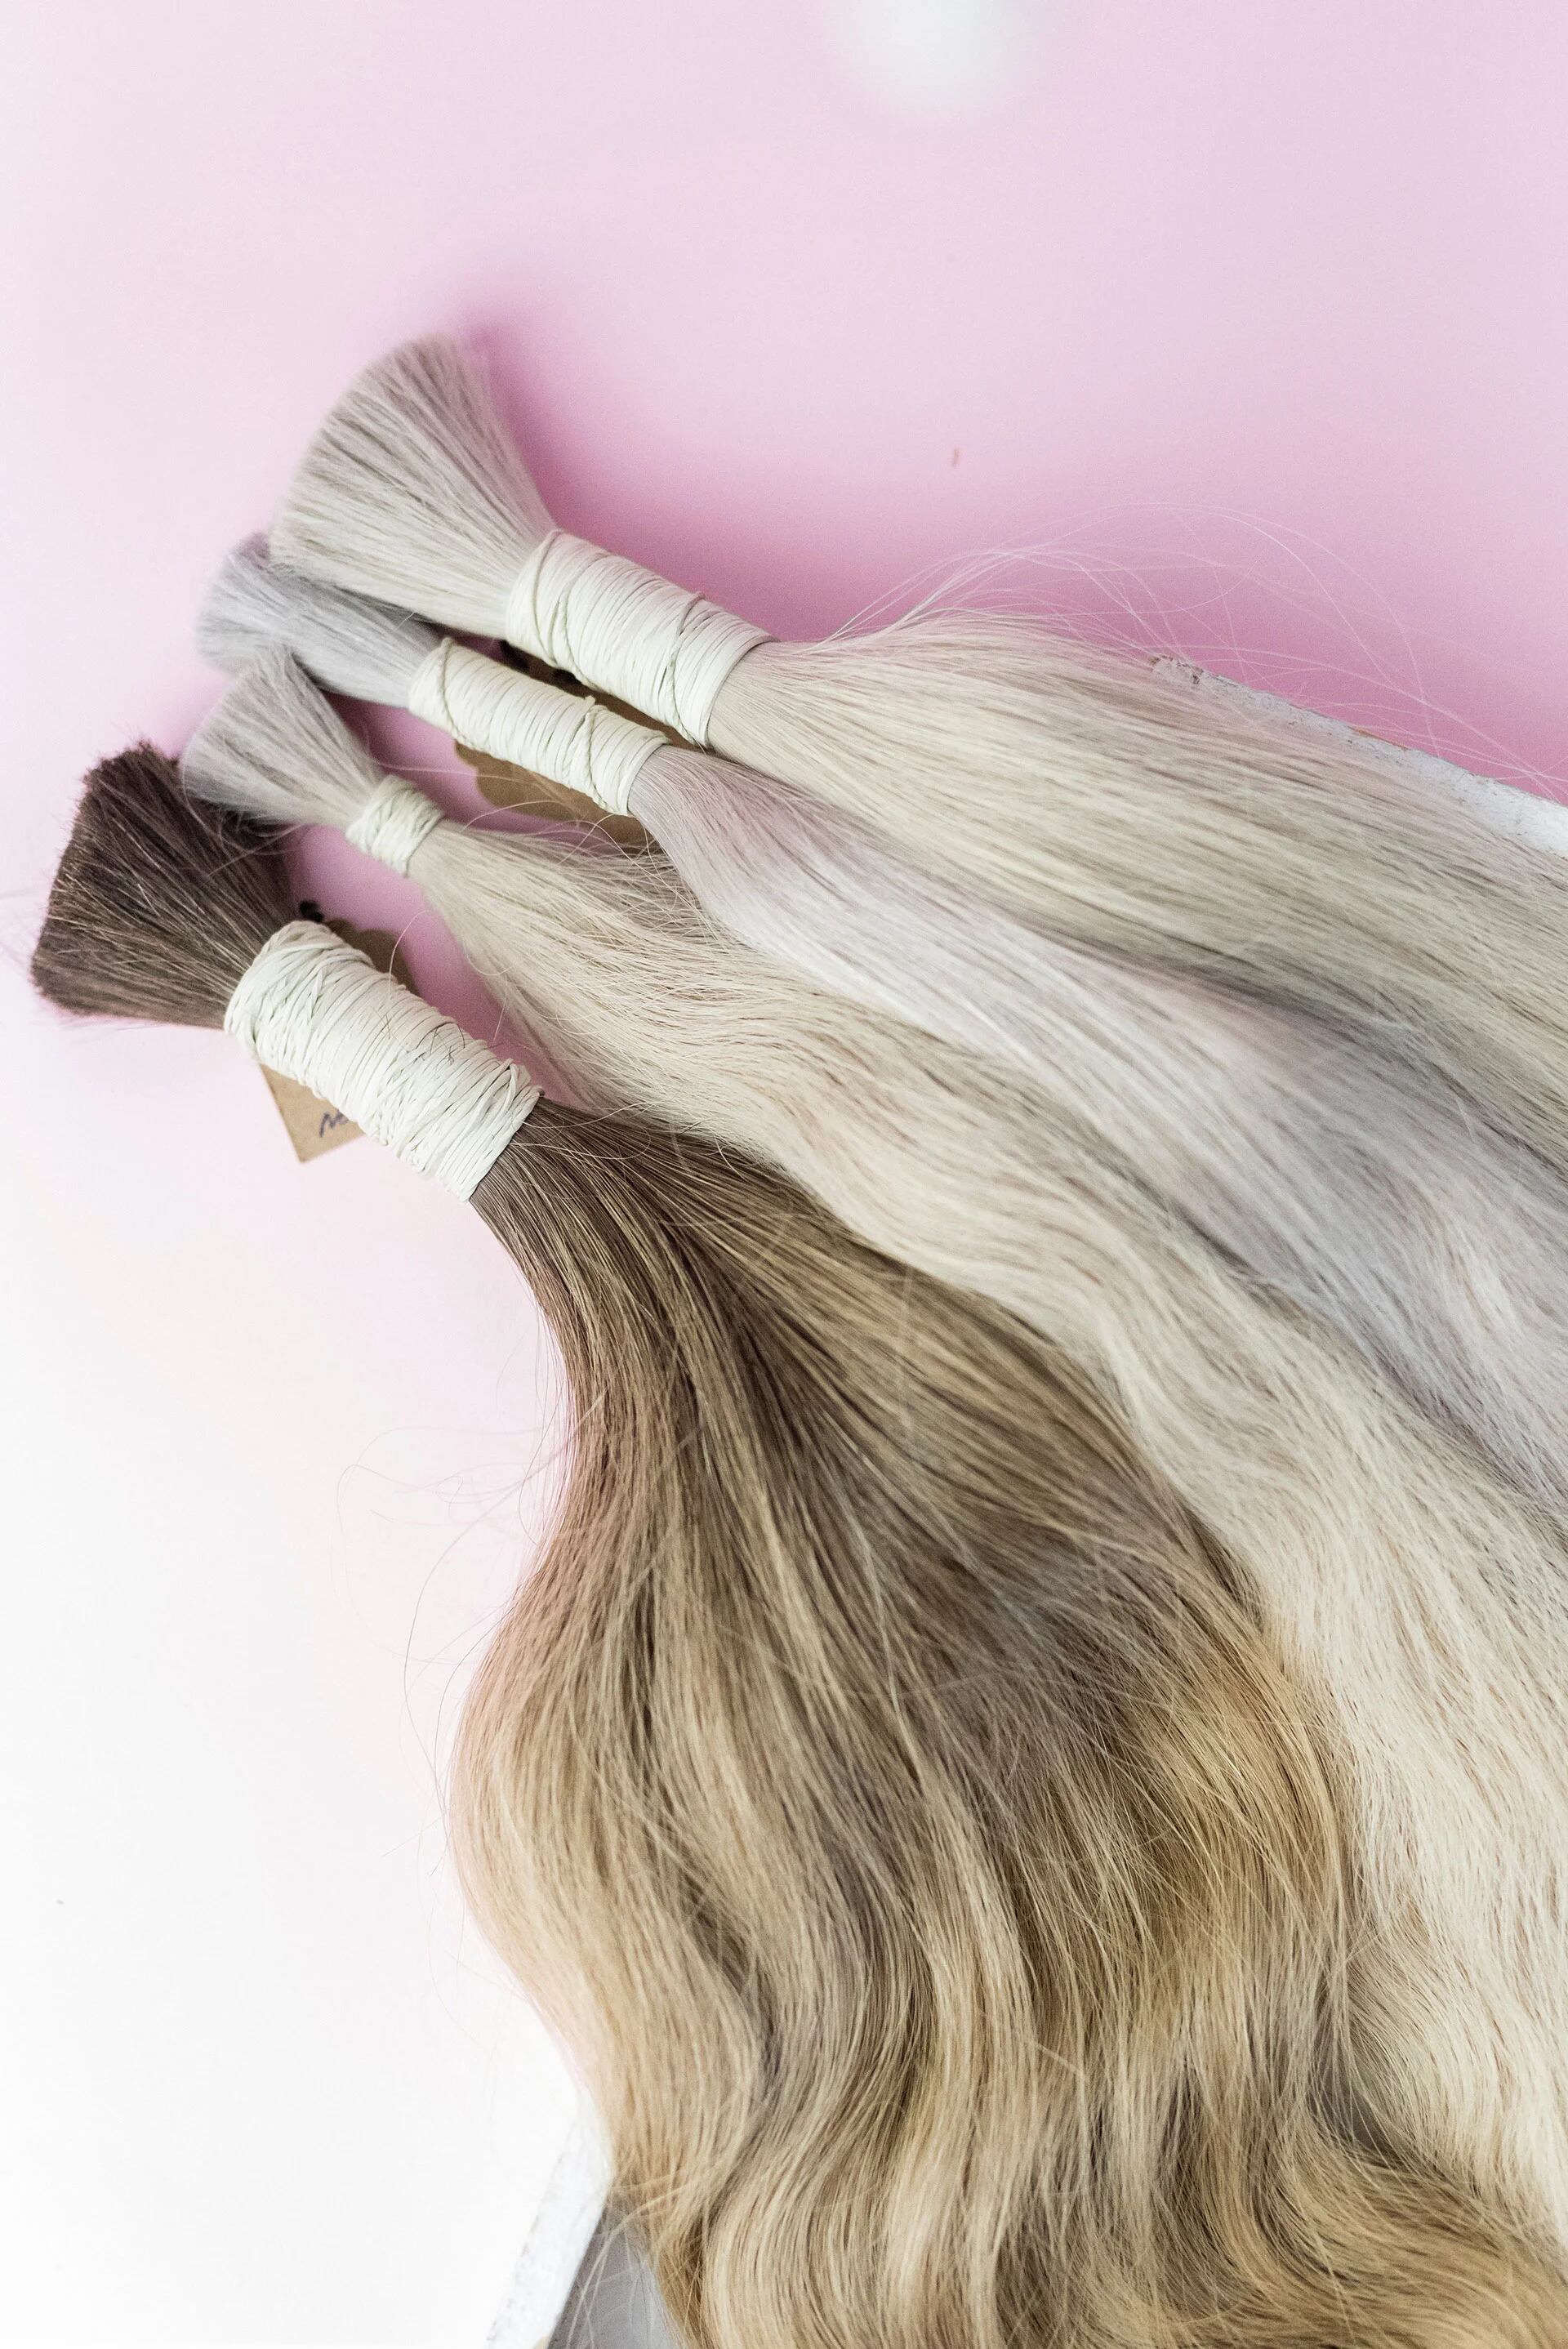 cabello: cuáles son sus usos, cuidados beneficios - Infobae